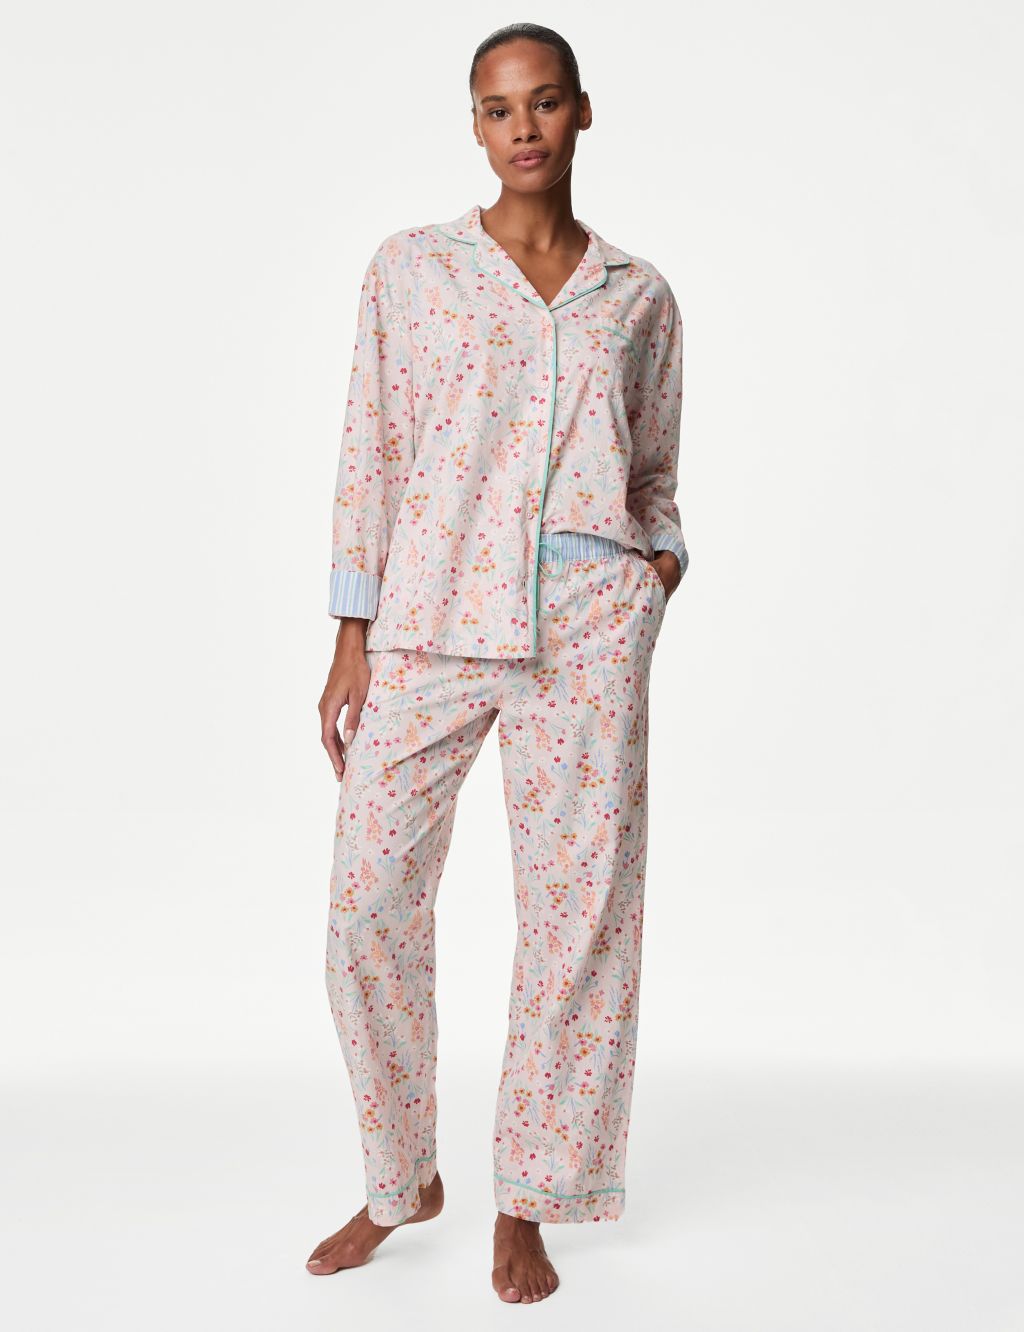 Women's Pink Pyjamas